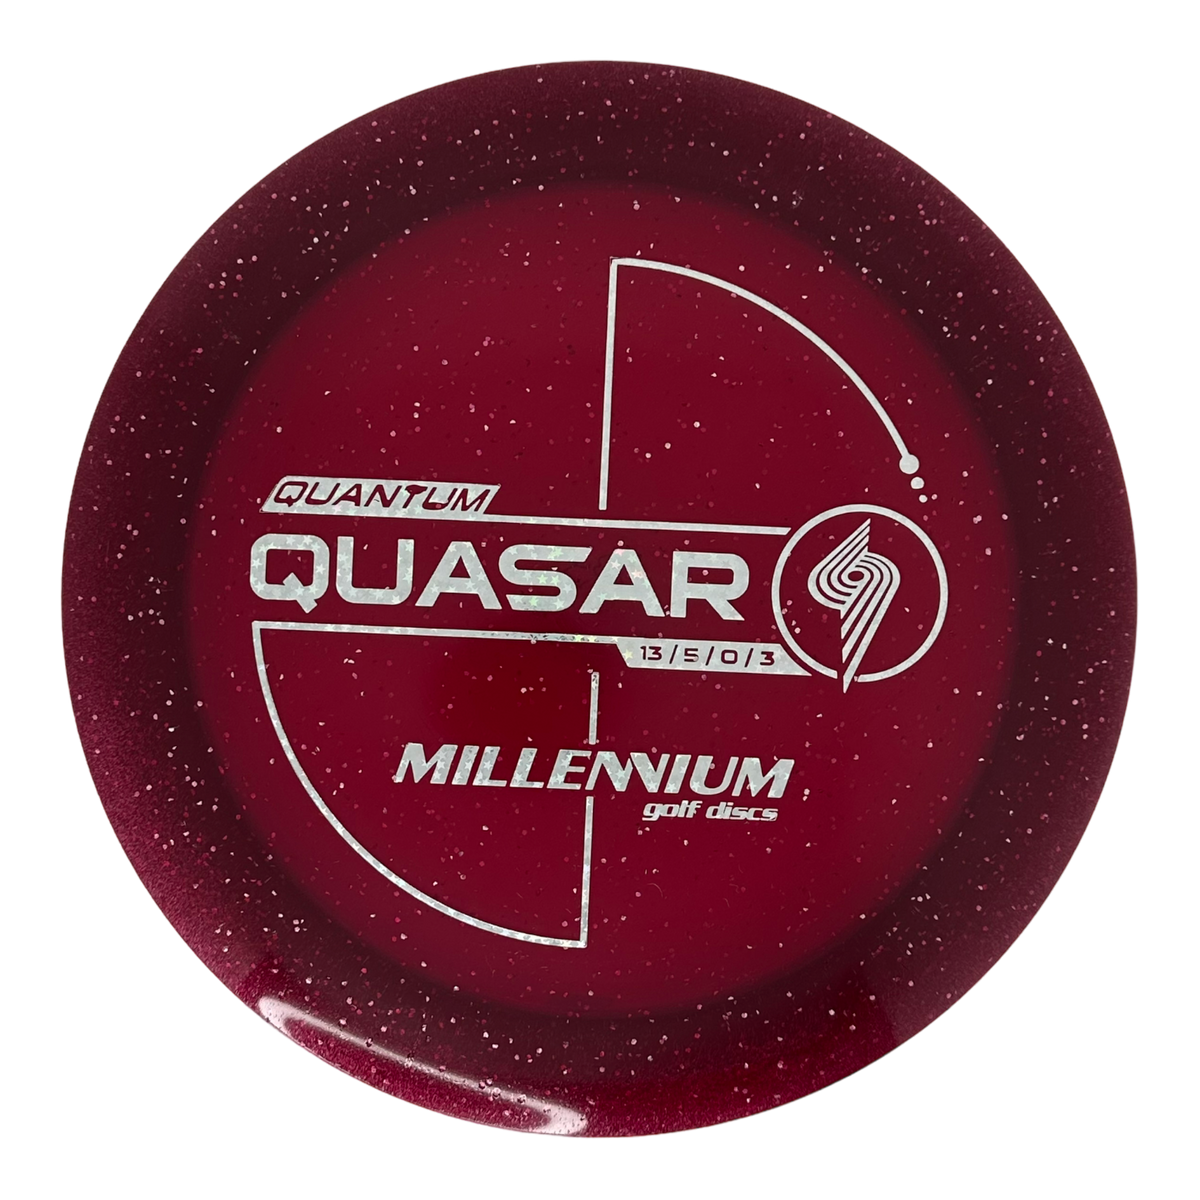 Millennium Metal Flake Quantum Quasar